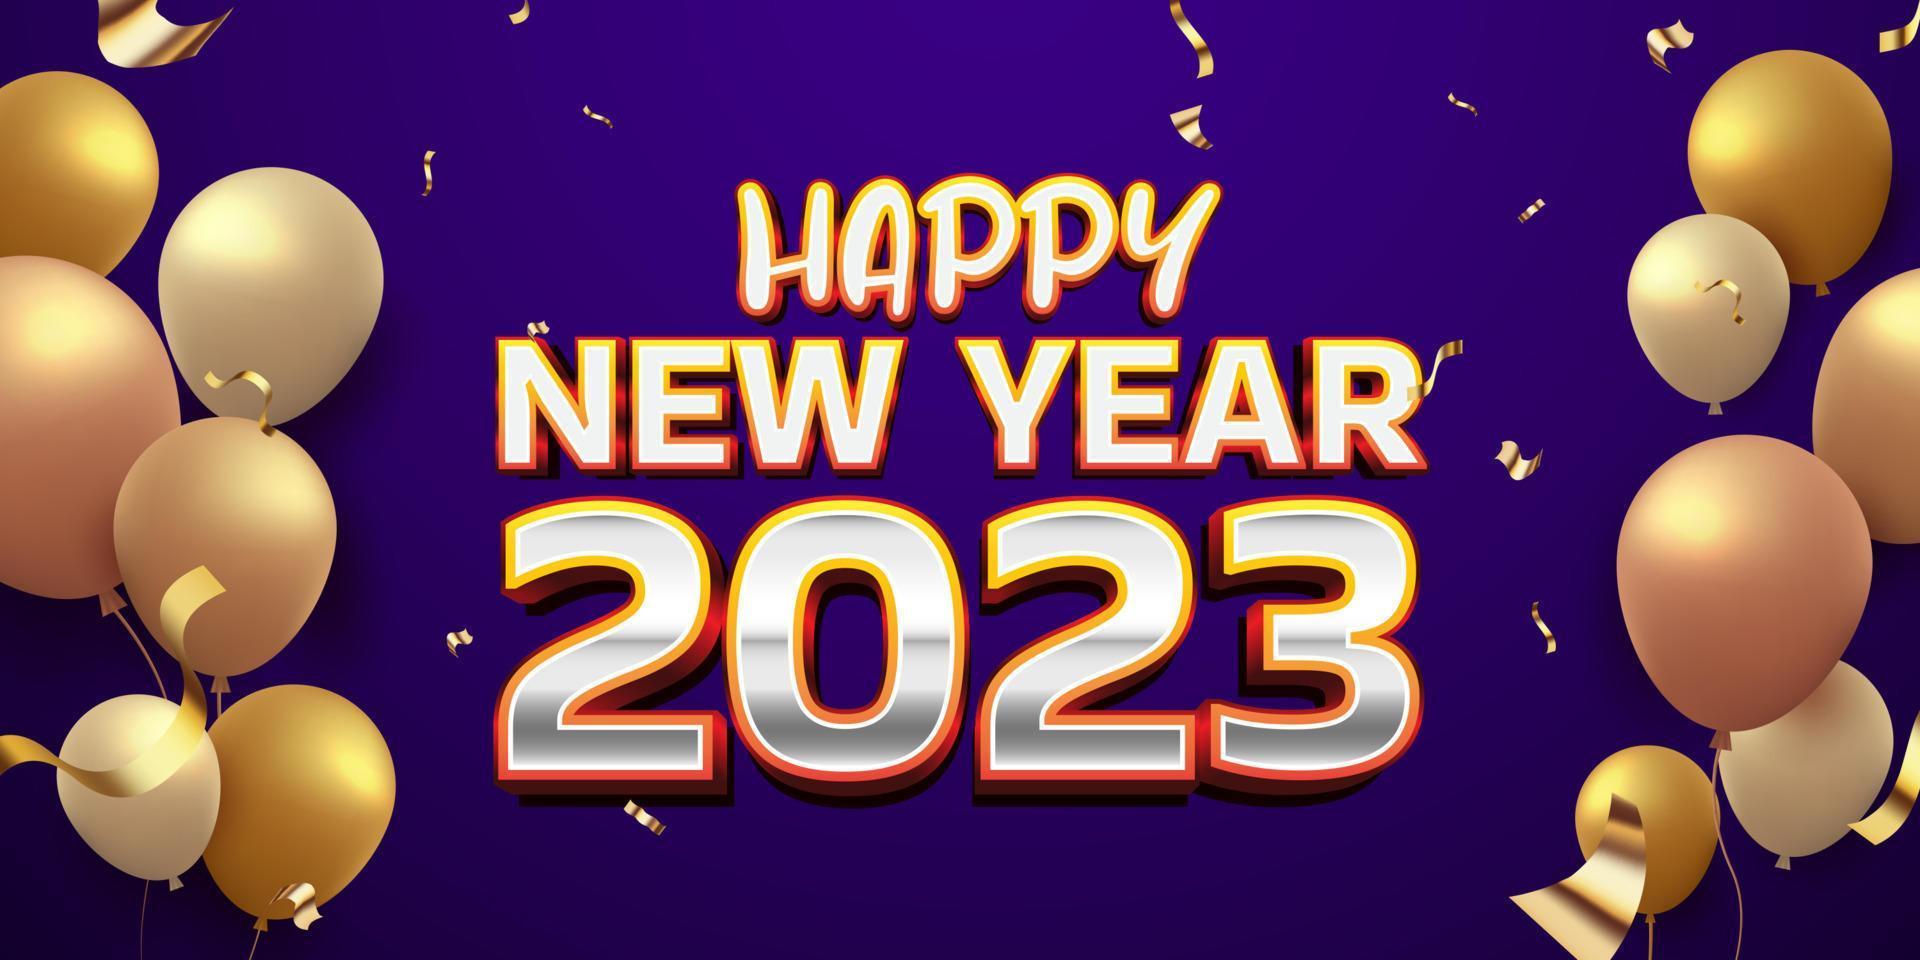 bonne année 2023 avec des confettis de ballons 3d dorés réalistes sur fond bleu foncé horizontal vecteur